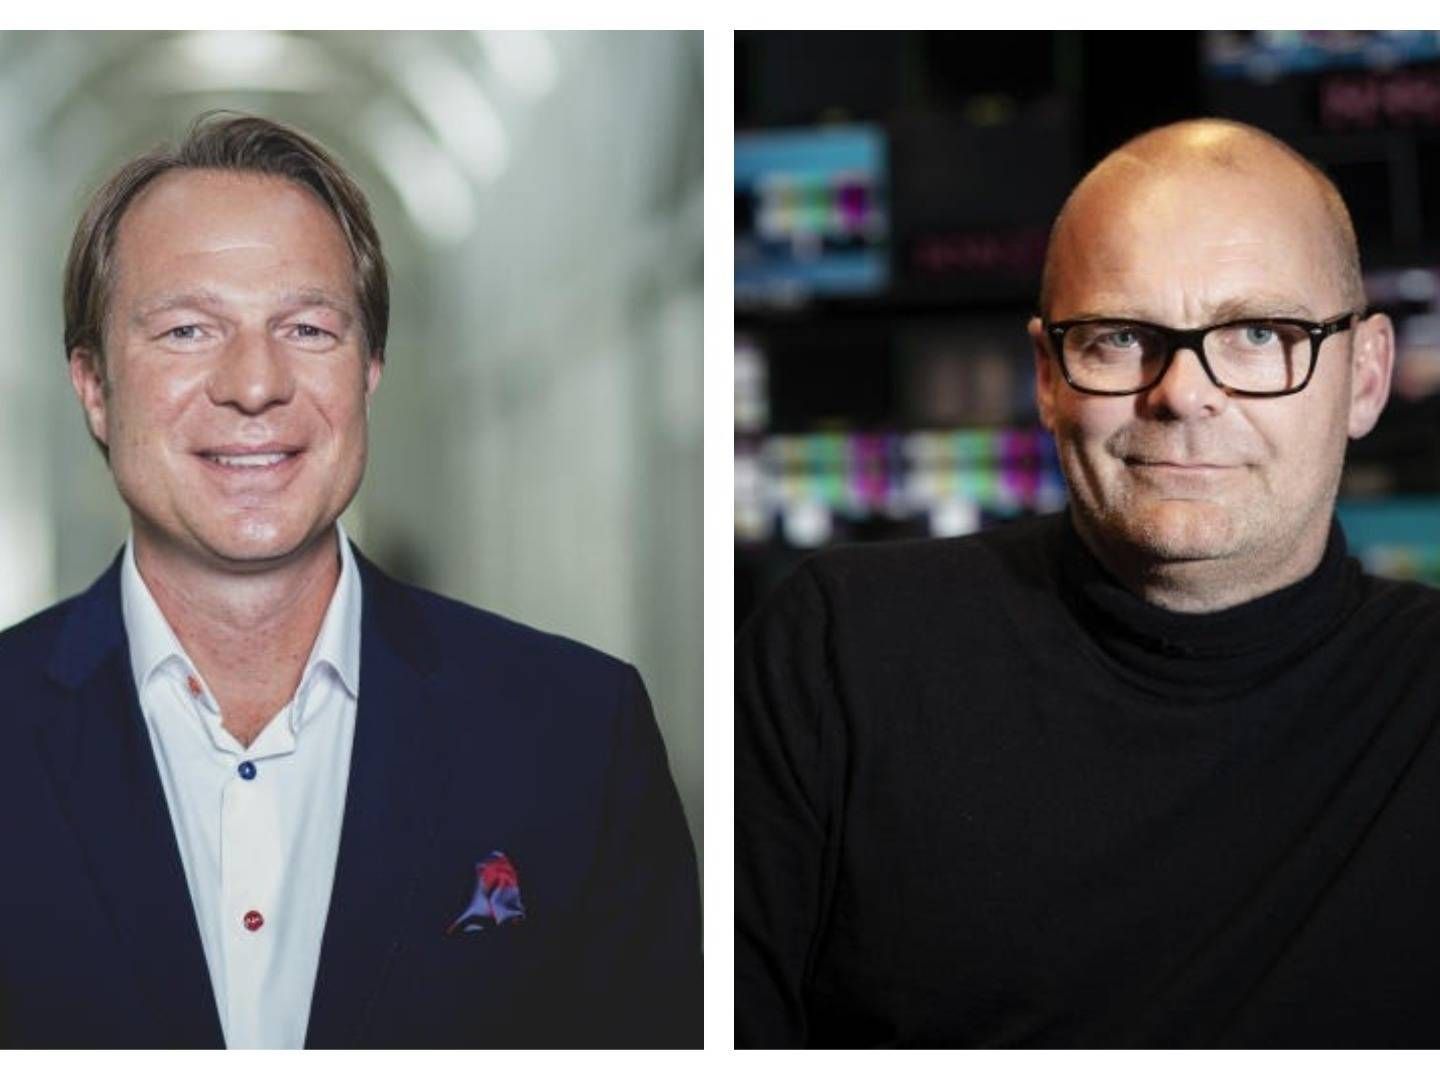 Frederik Lauesen (tv.) og Peter Nørrelund fra hhv. TV 2 og Nent. | Foto: Per Arnesen/TV 2 og Emil Agerskov/Ekstra Bladet